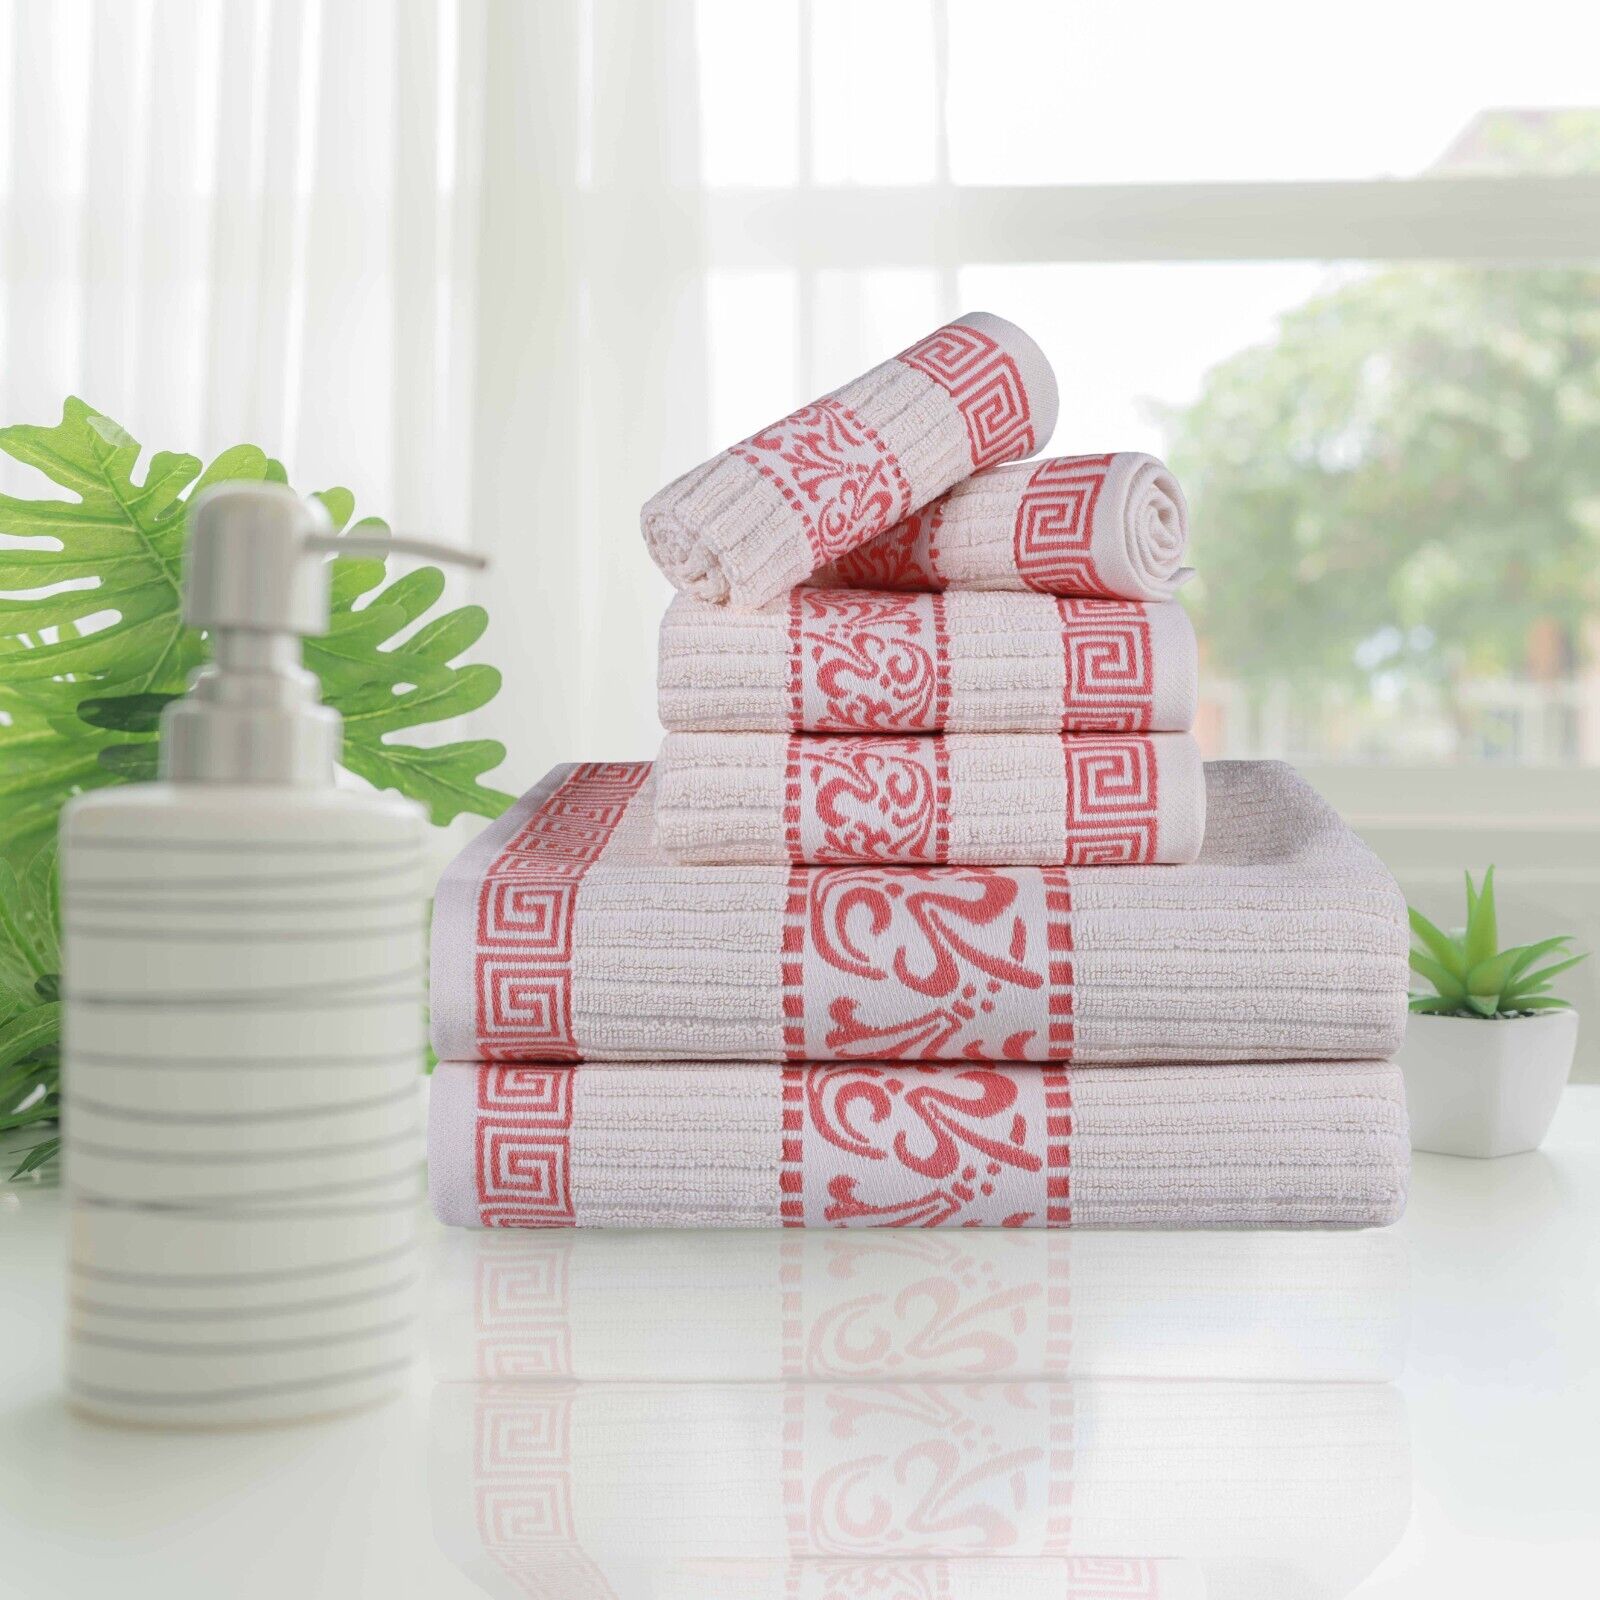 Towel Set  Buy Premium Bath Towels, Washcloths, Bath Mats, and